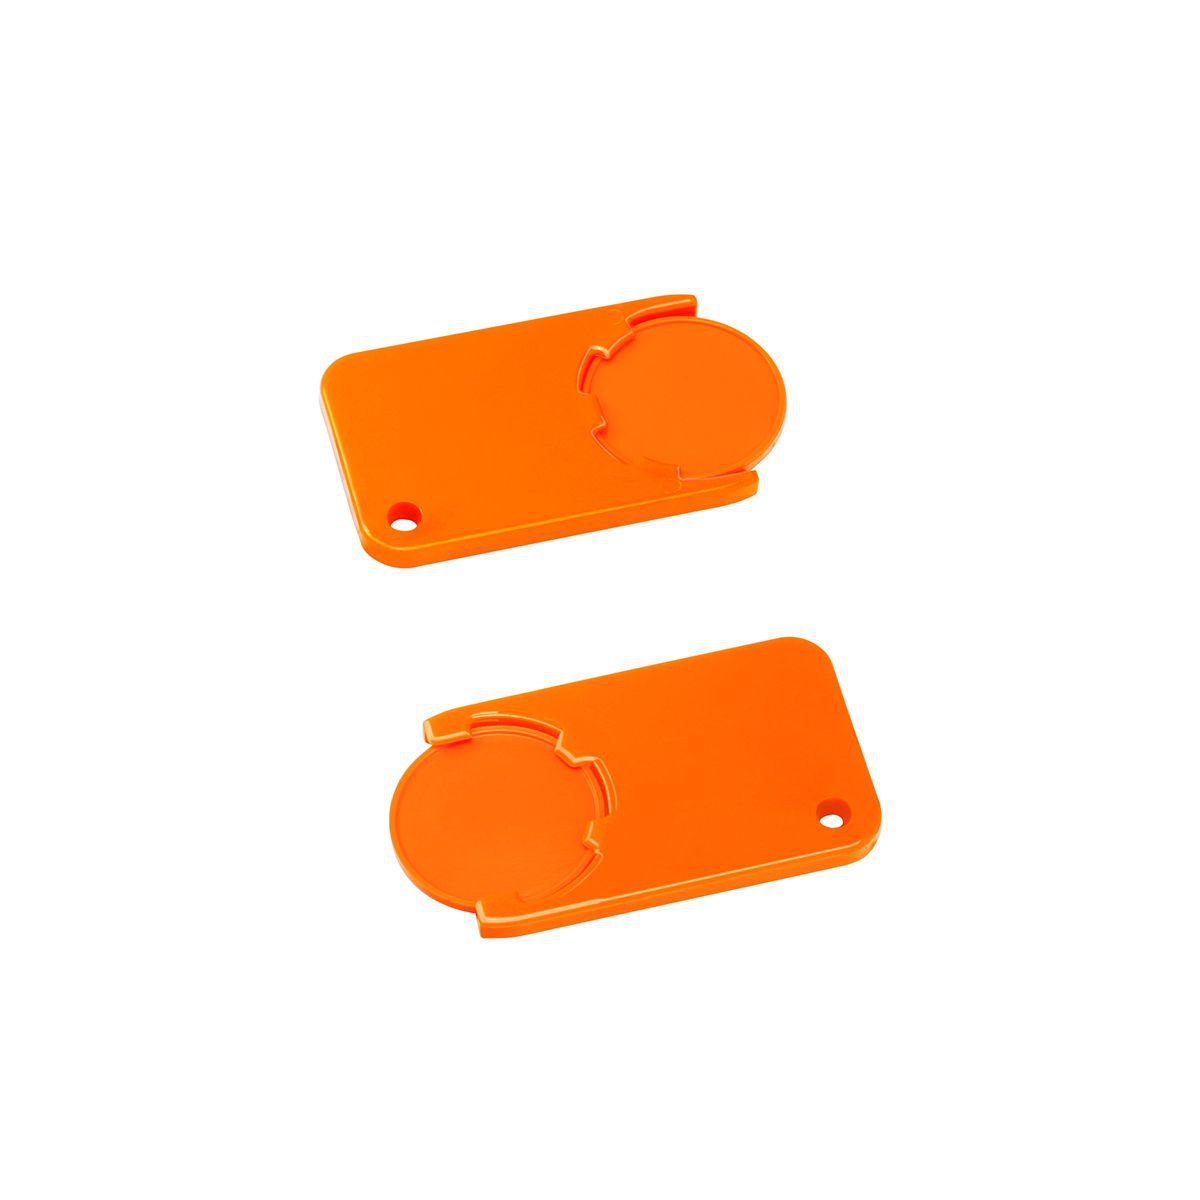 Chiphalter mit 1€-Chip "Beta", orange, orange